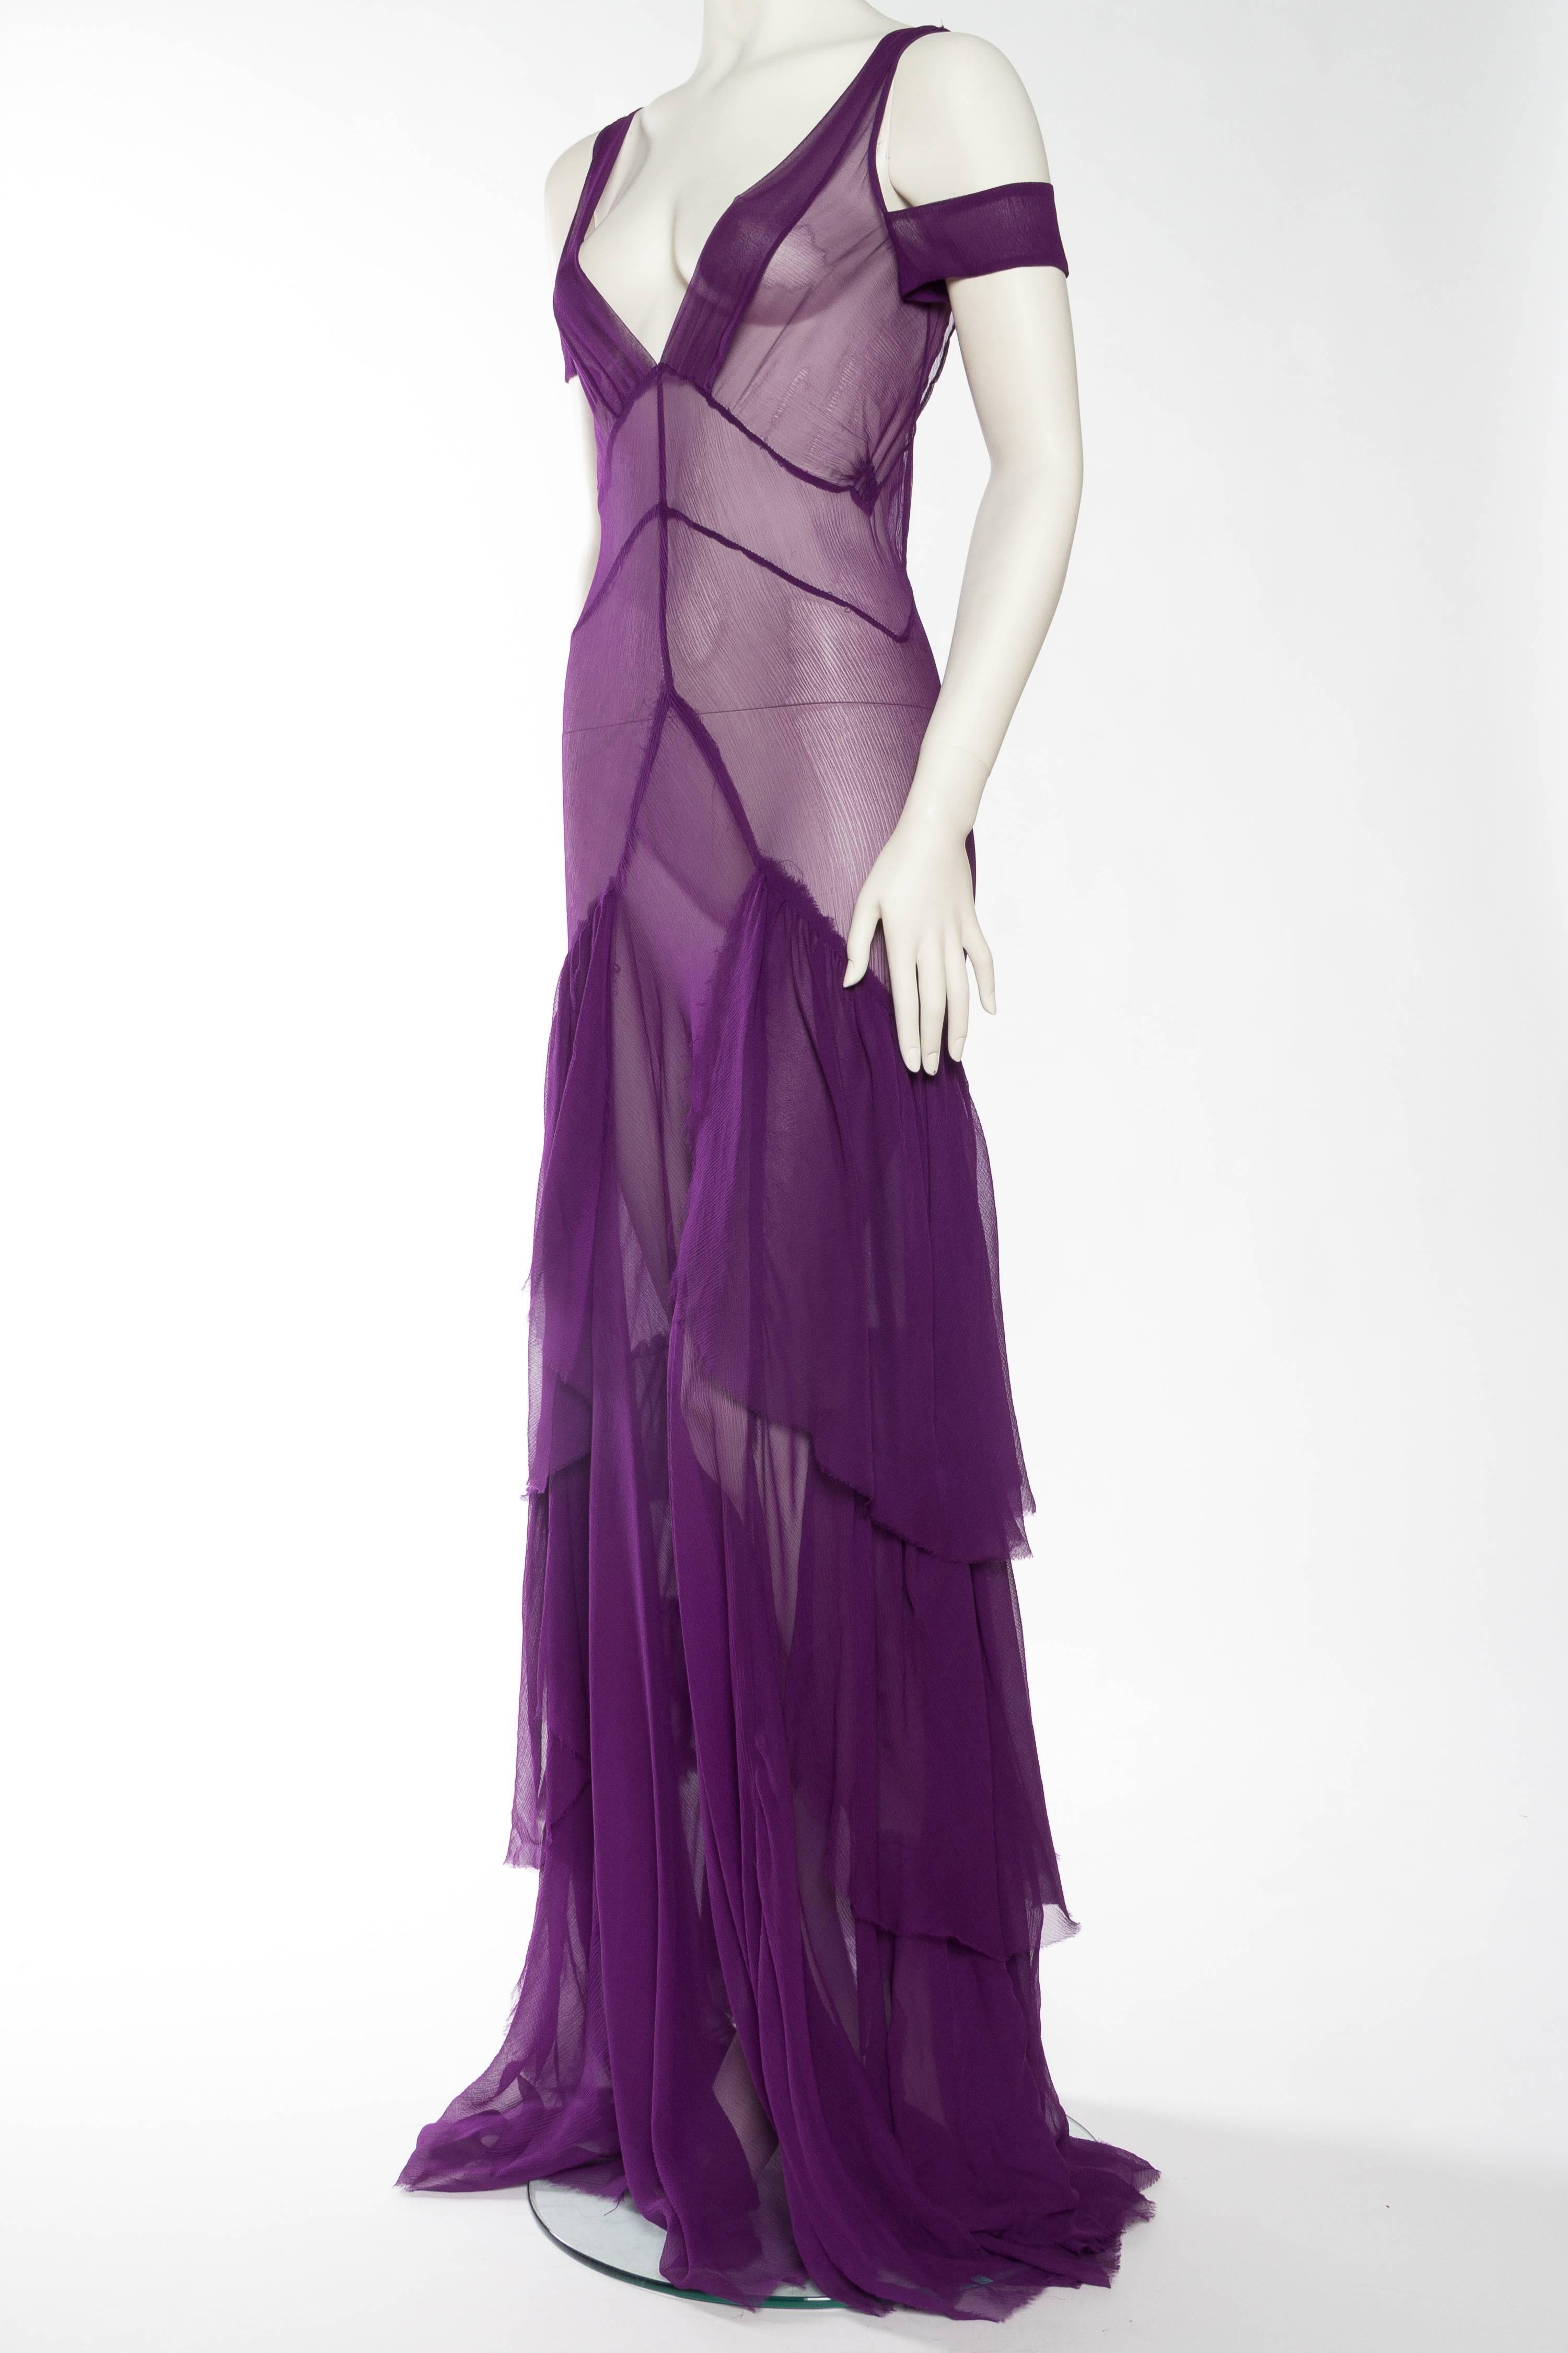 Women's 1930s Style Sheer Chiffon Gown